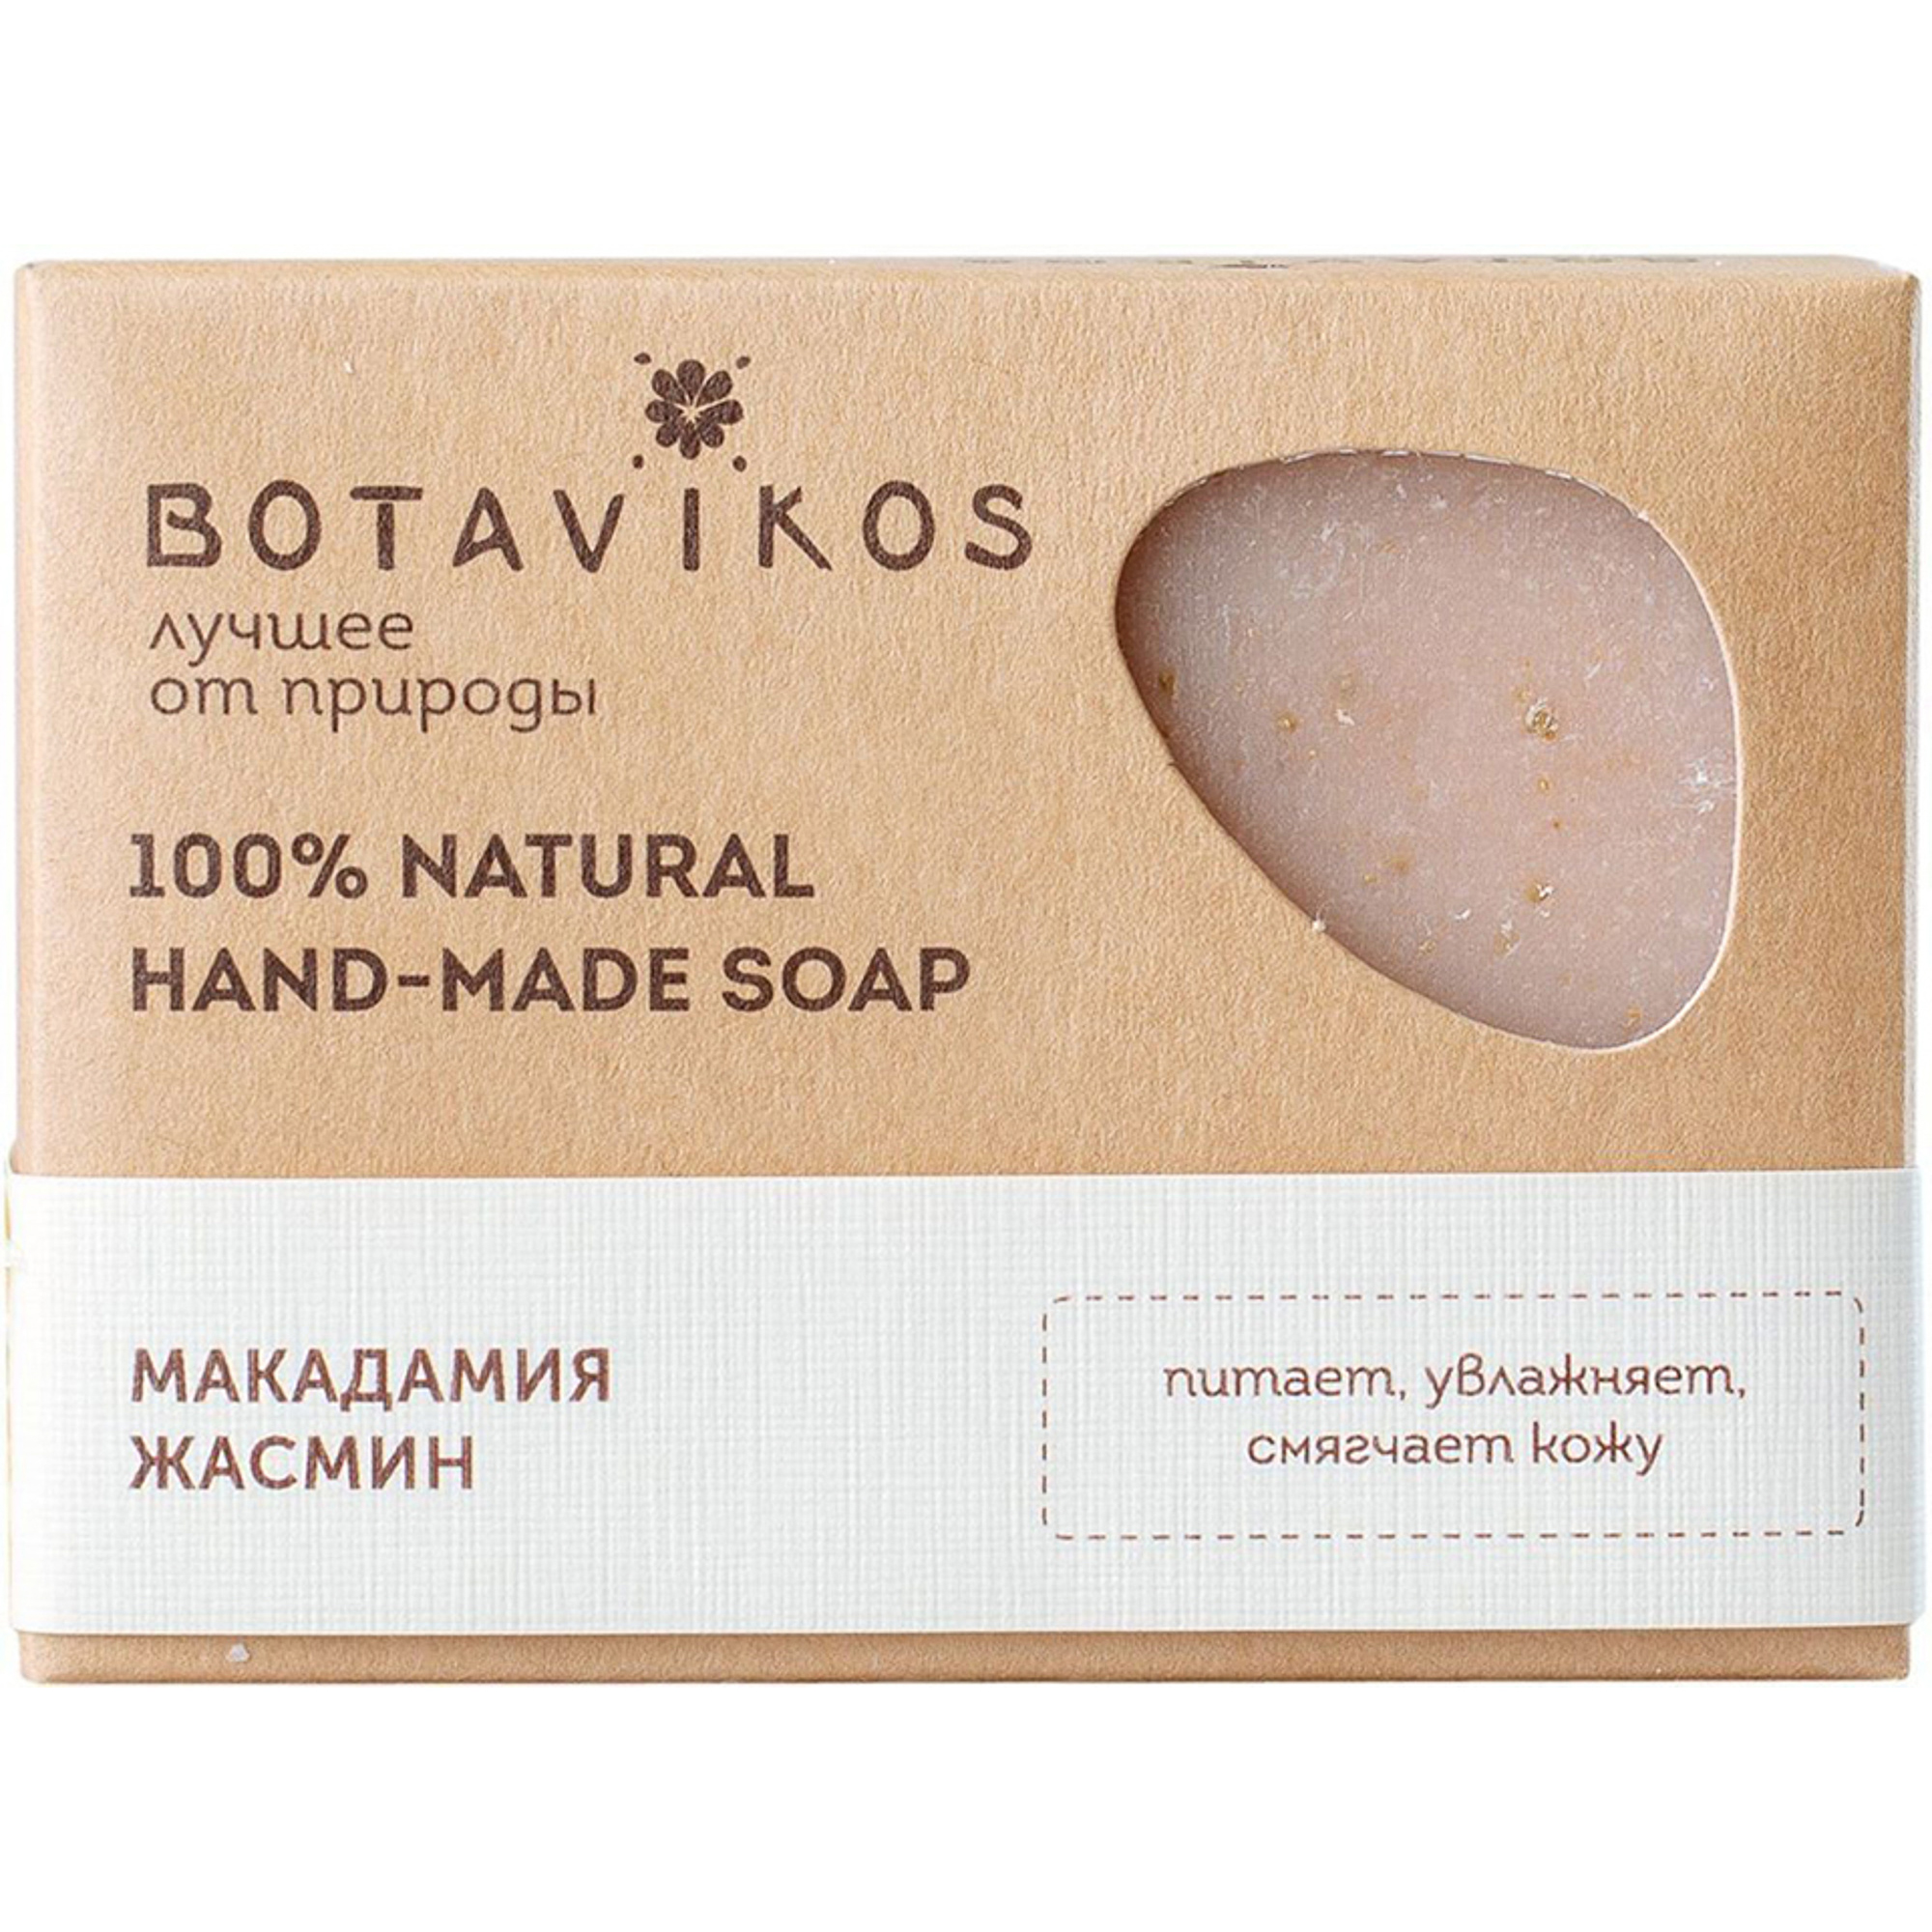 Натуральное мыло ручной работы Botavikos Макадамия Жасмин 100 г макадамия metro chef сушёная 150 гр